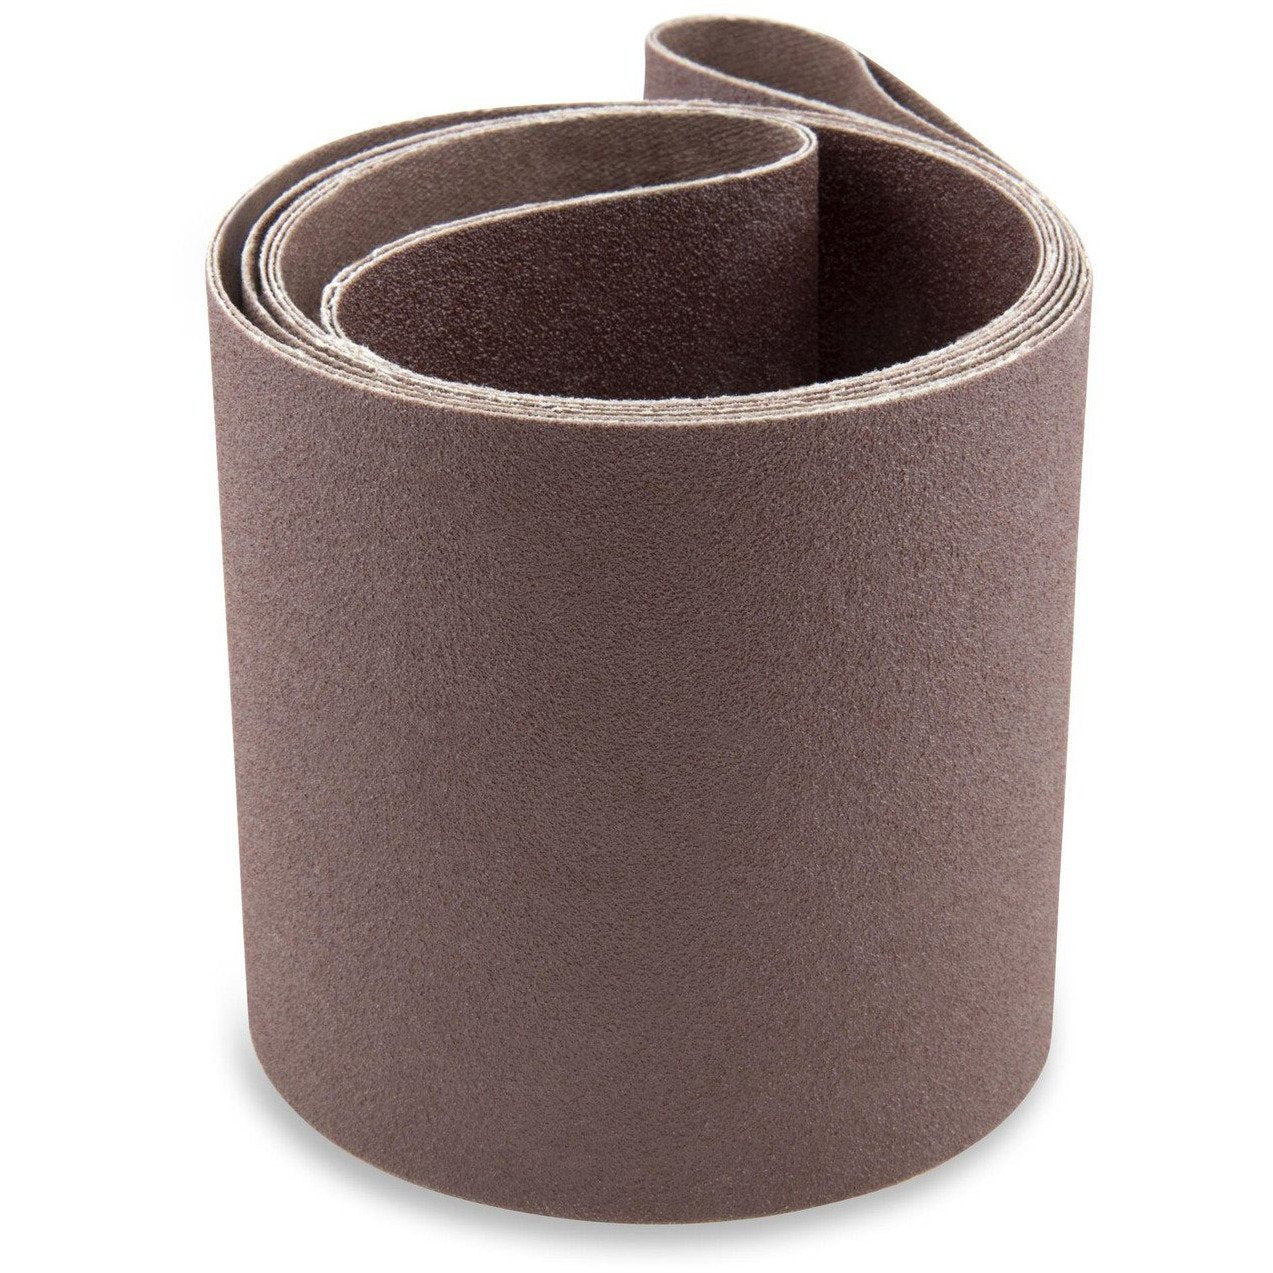 6 x 60 Inch Aluminum Oxide Metal Sanding Belts, 2 Pack - Red Label Abrasives